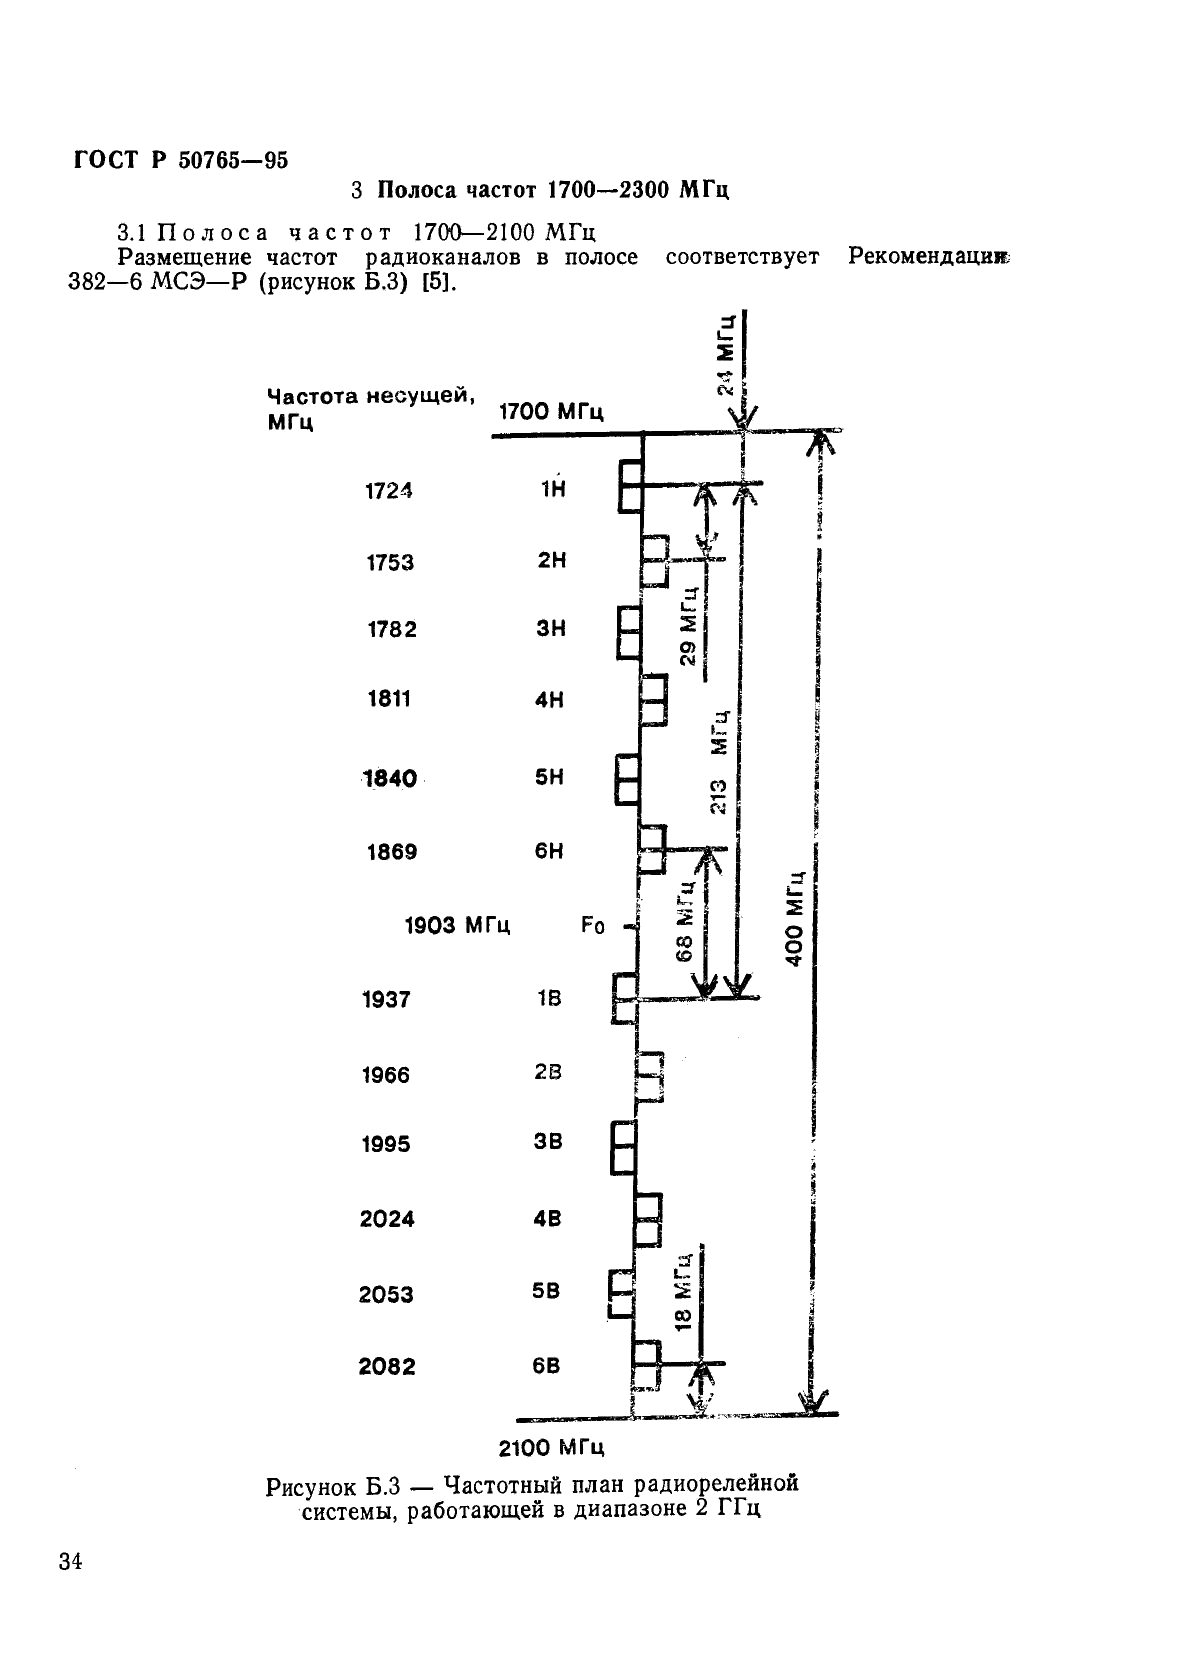 ГОСТ Р 50765-95 Аппаратура радиорелейная. Классификация. Основные параметры цепей стыка (фото 37 из 62)